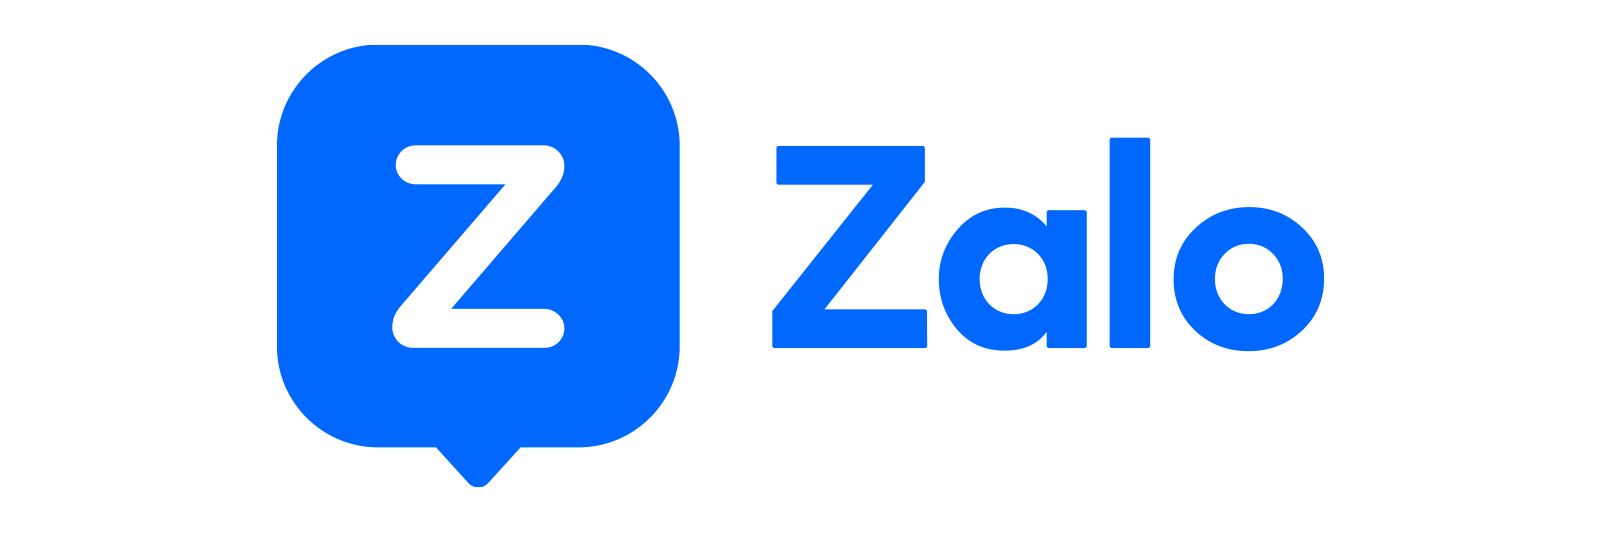 Hướng dẫn cách tắt trạng thái Đã xem tin nhắn Zalo